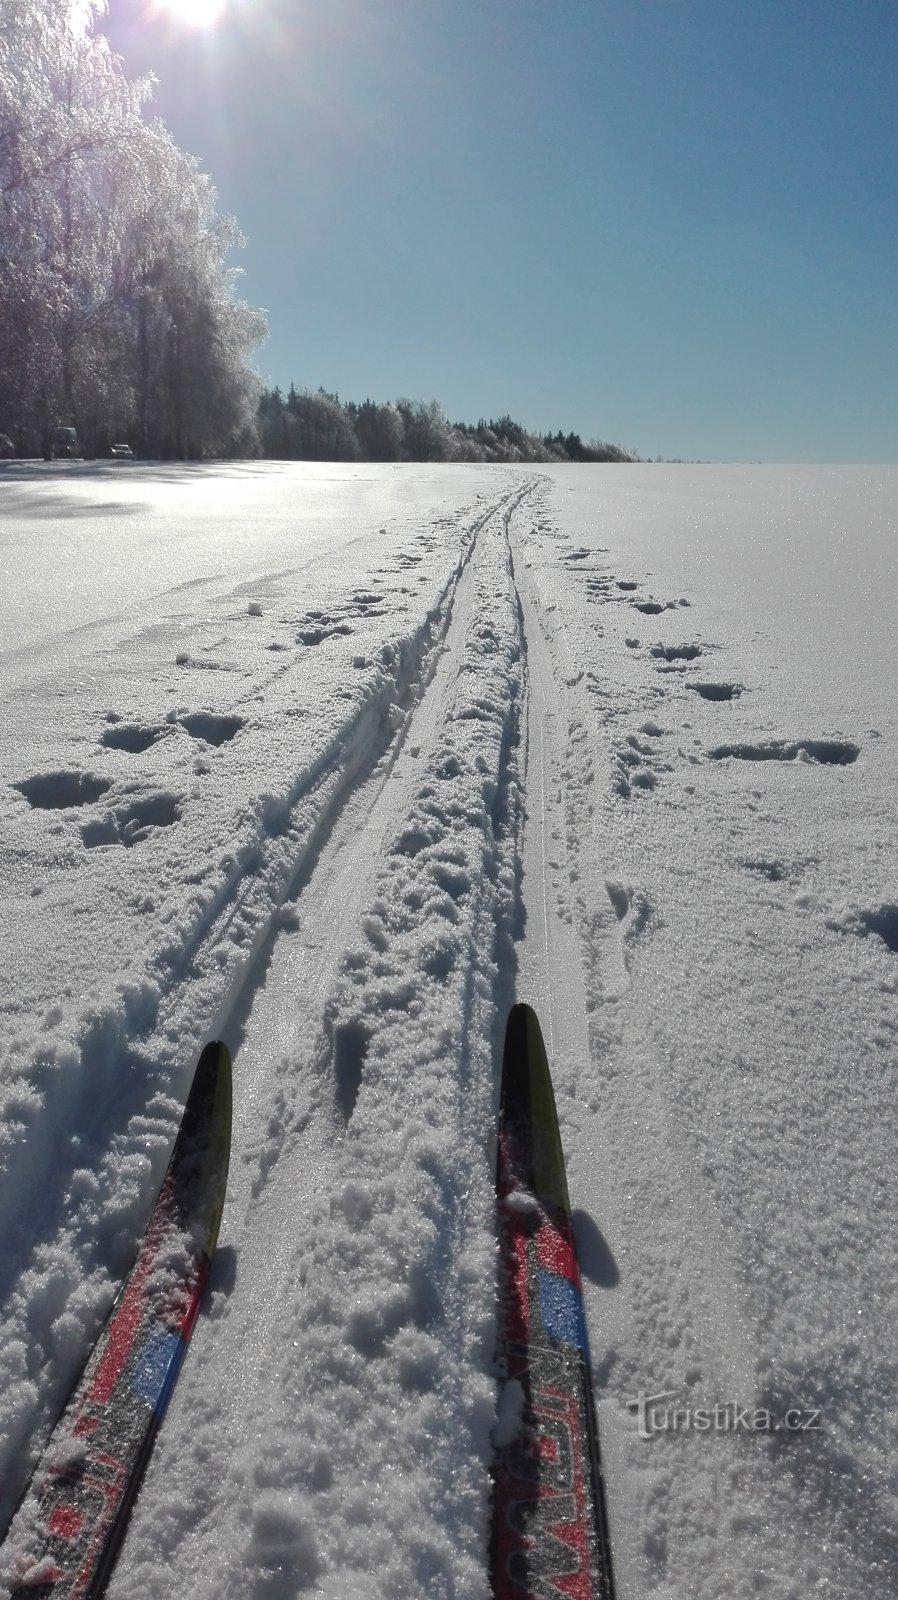 Зимнее нагорье на беговых лыжах - трасса для беговых лыж в Розкоше.